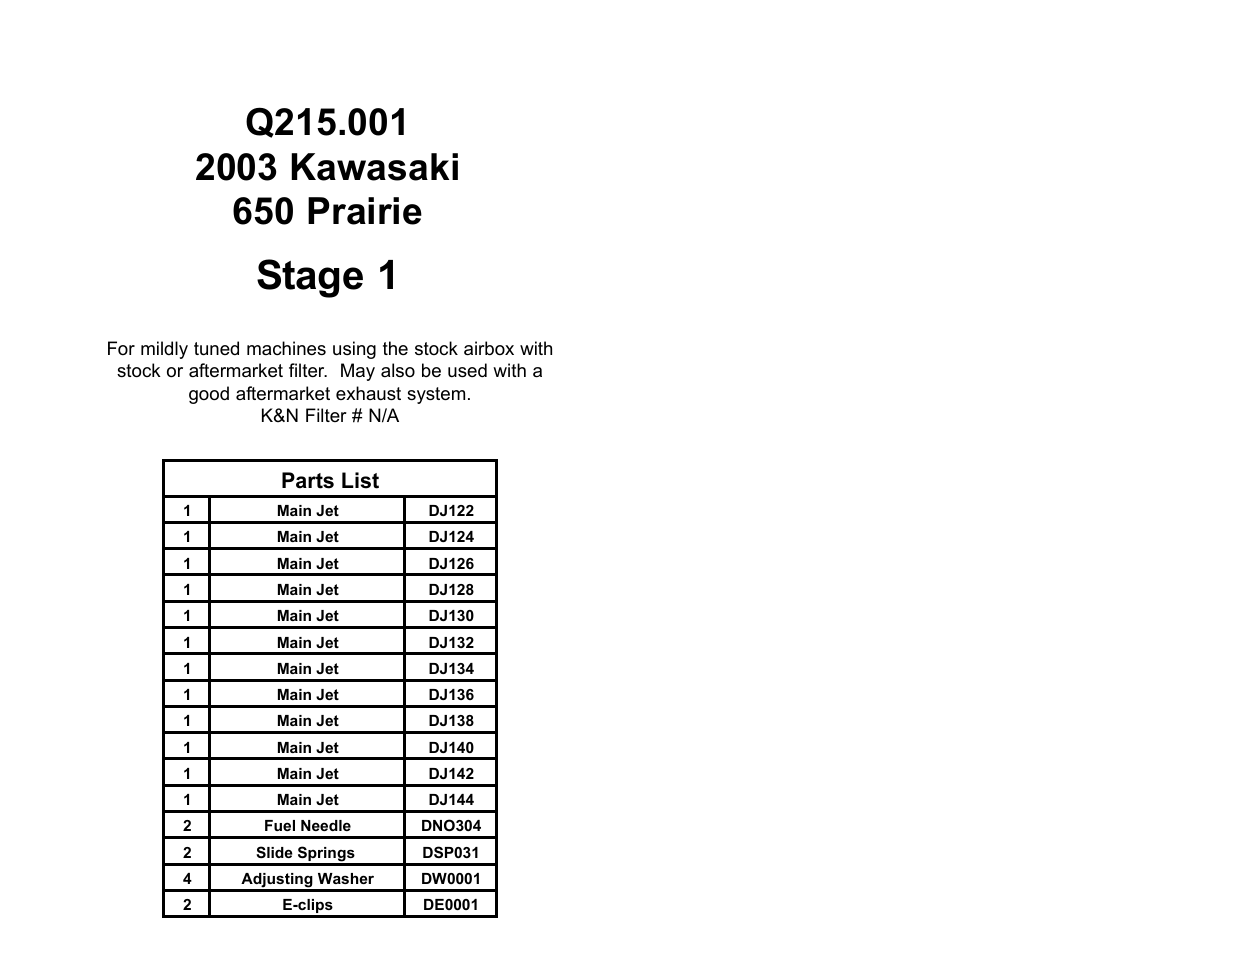 DynoJet Jet Kit for Kawasaki Prairie 650 (2003)